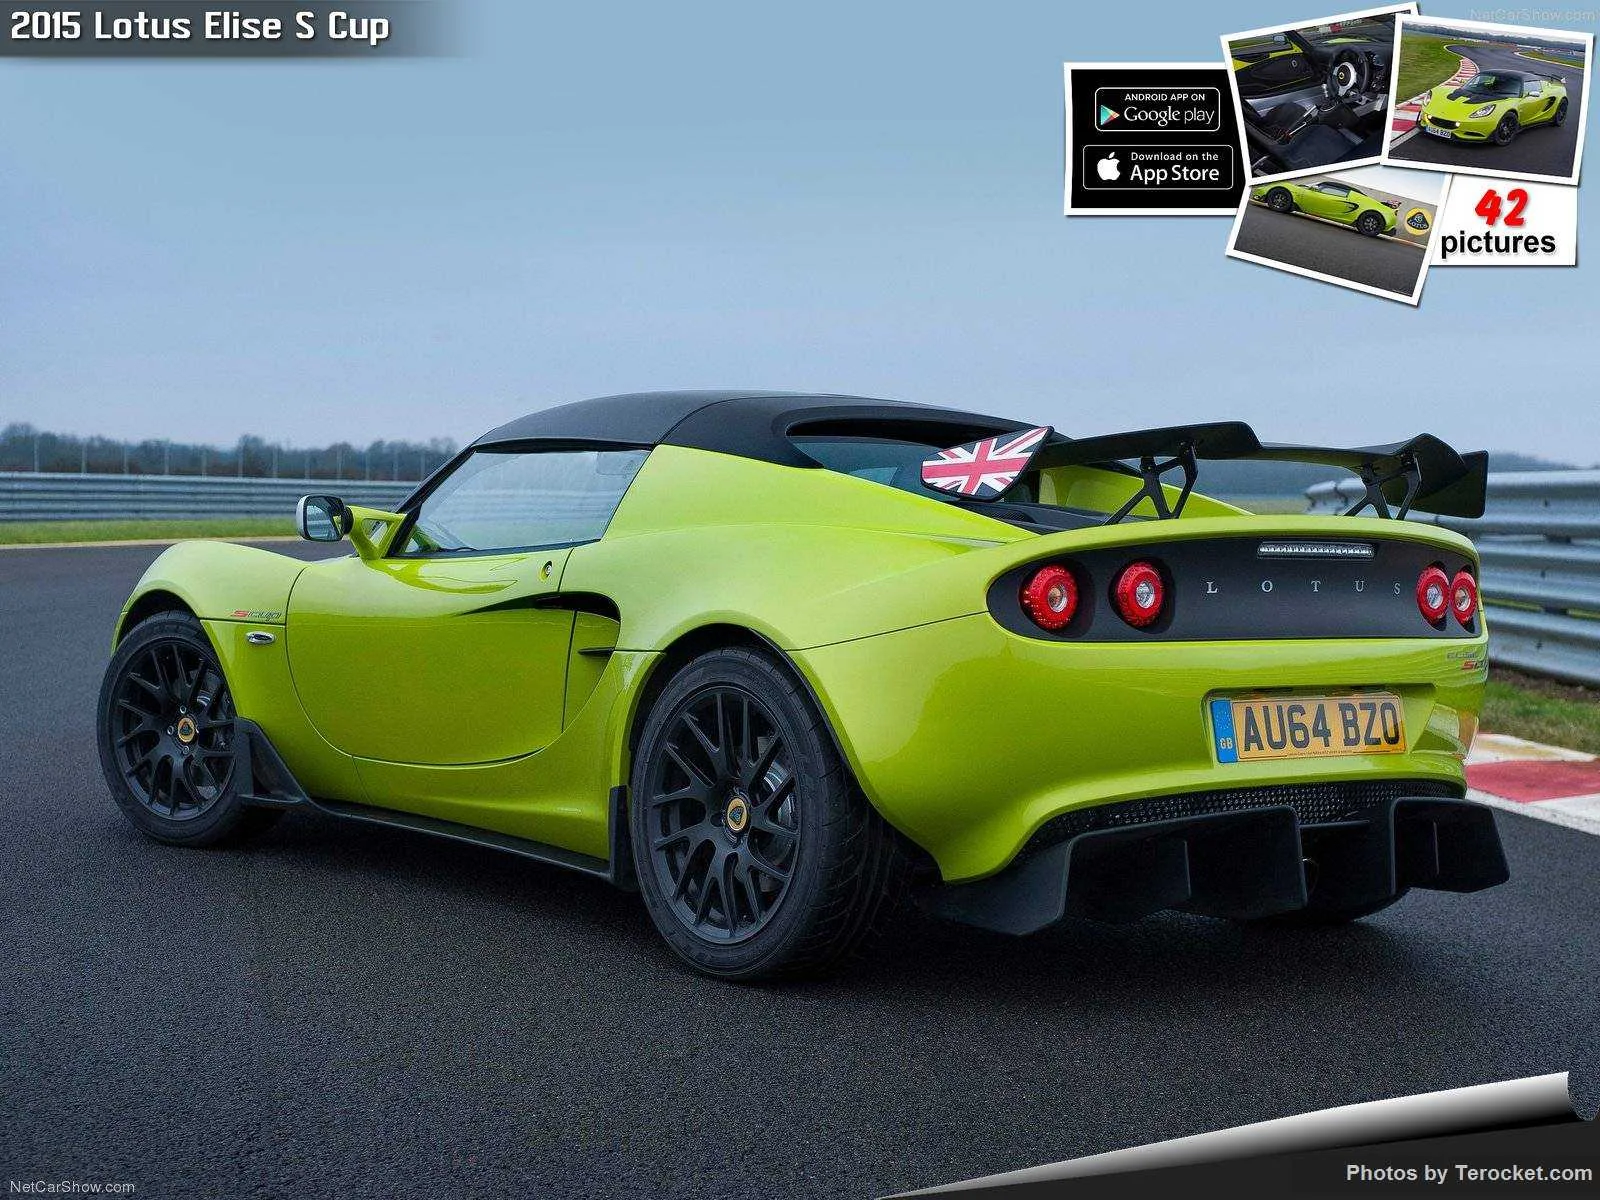 Hình ảnh siêu xe Lotus Elise S Cup 2015 & nội ngoại thất